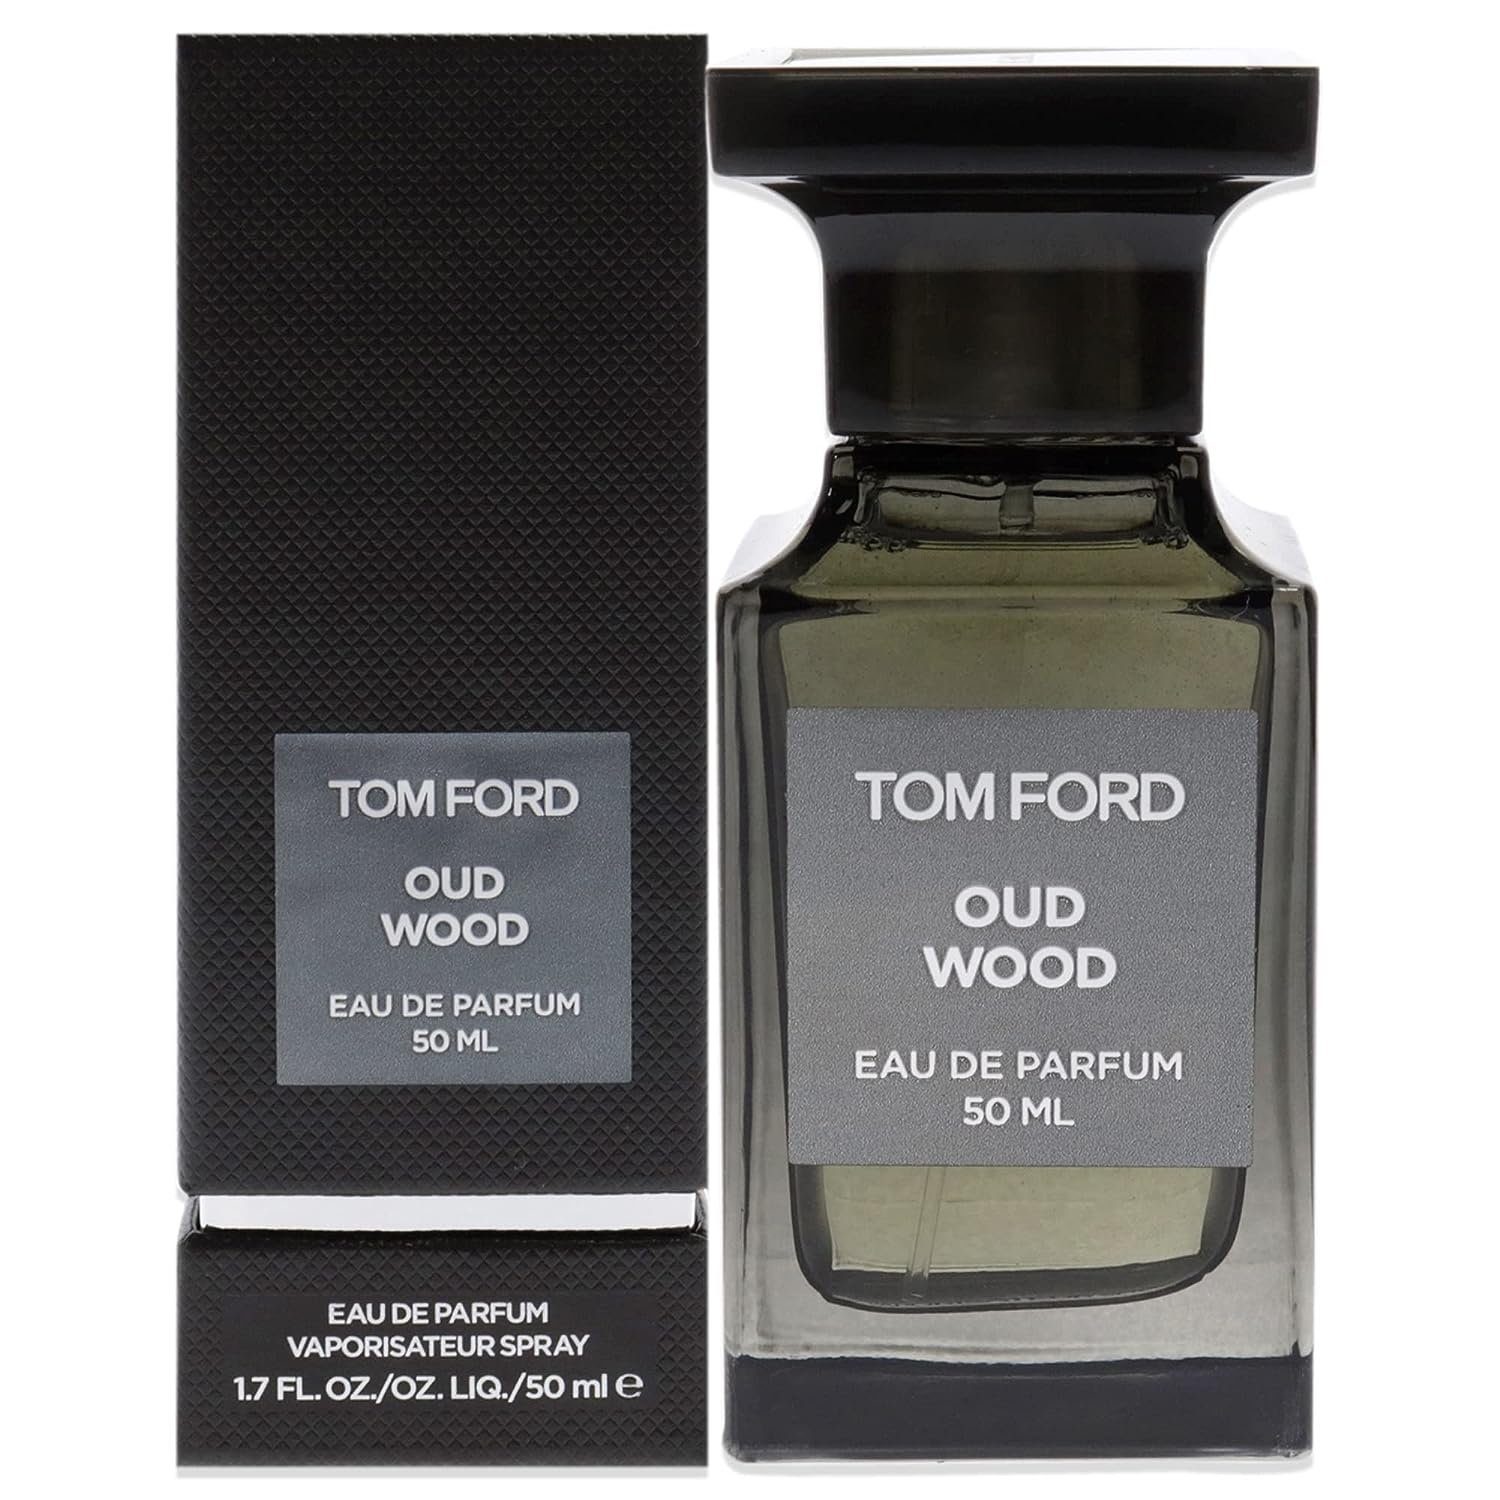 Tom Ford Eau de Parfum Oud Wood 50ml Eau de Parfum